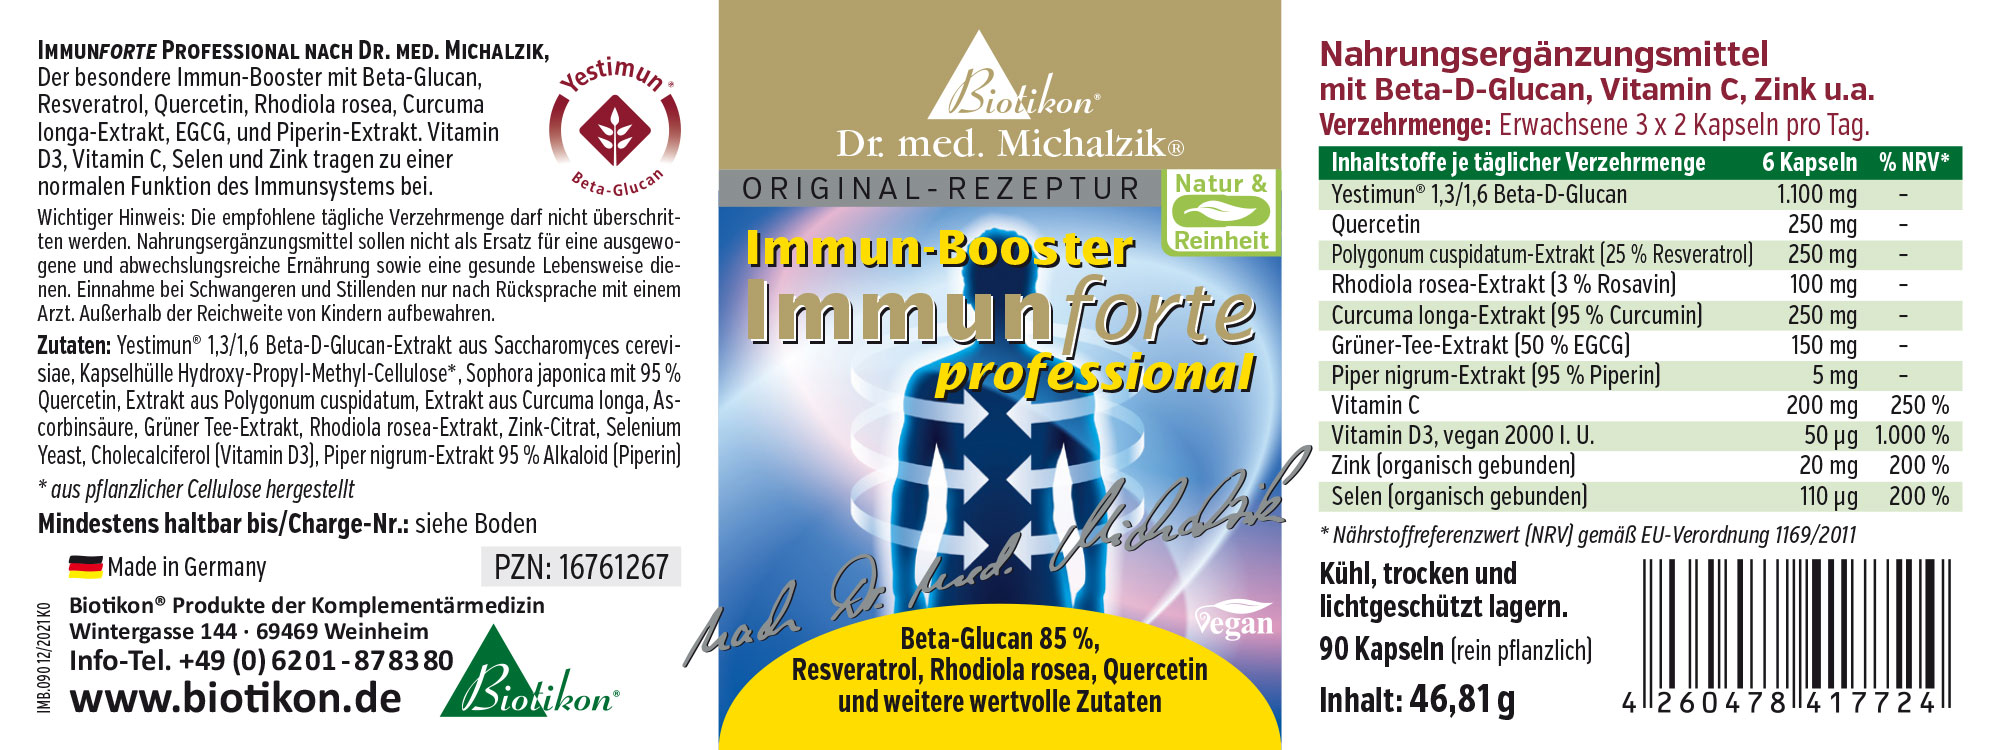 Immunoforte professional